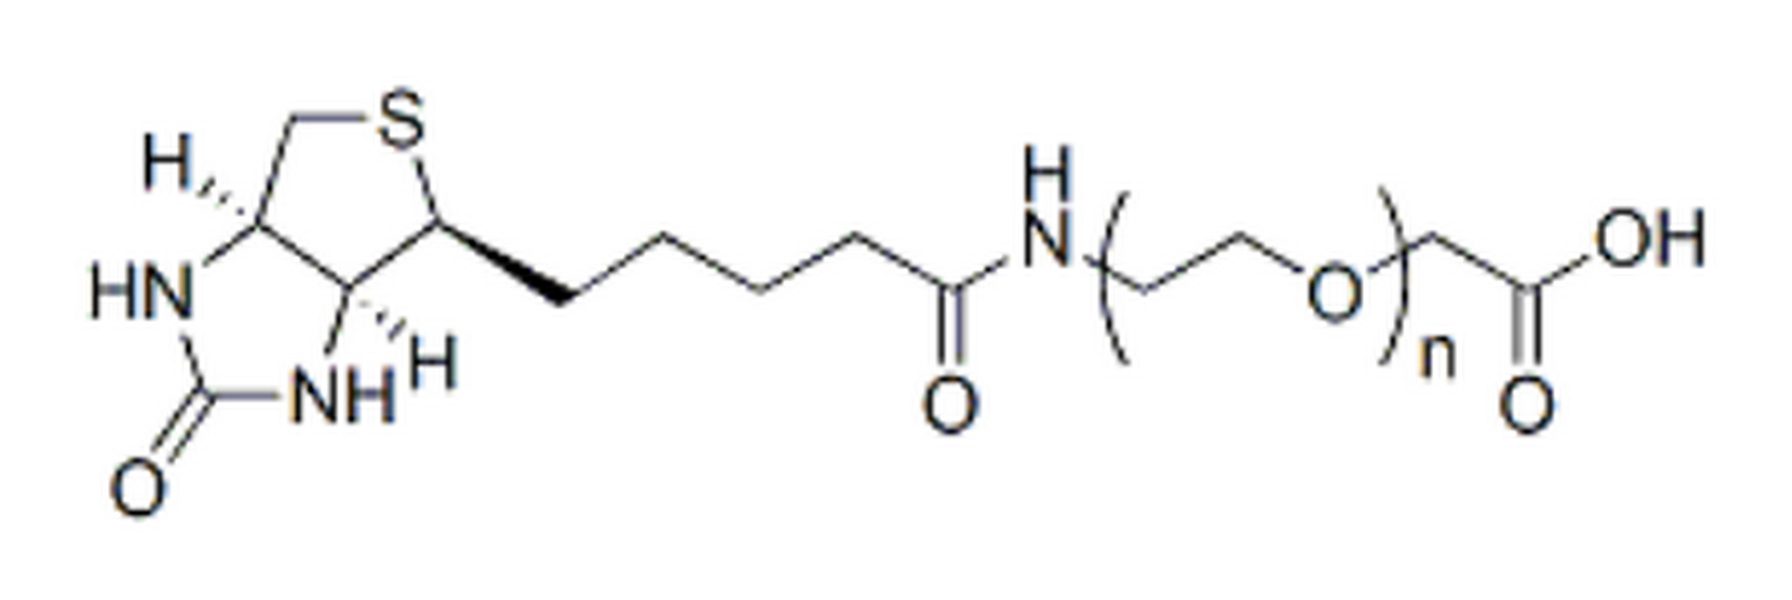 Biotin-PEG-CH2CO2H, MW 3.5K